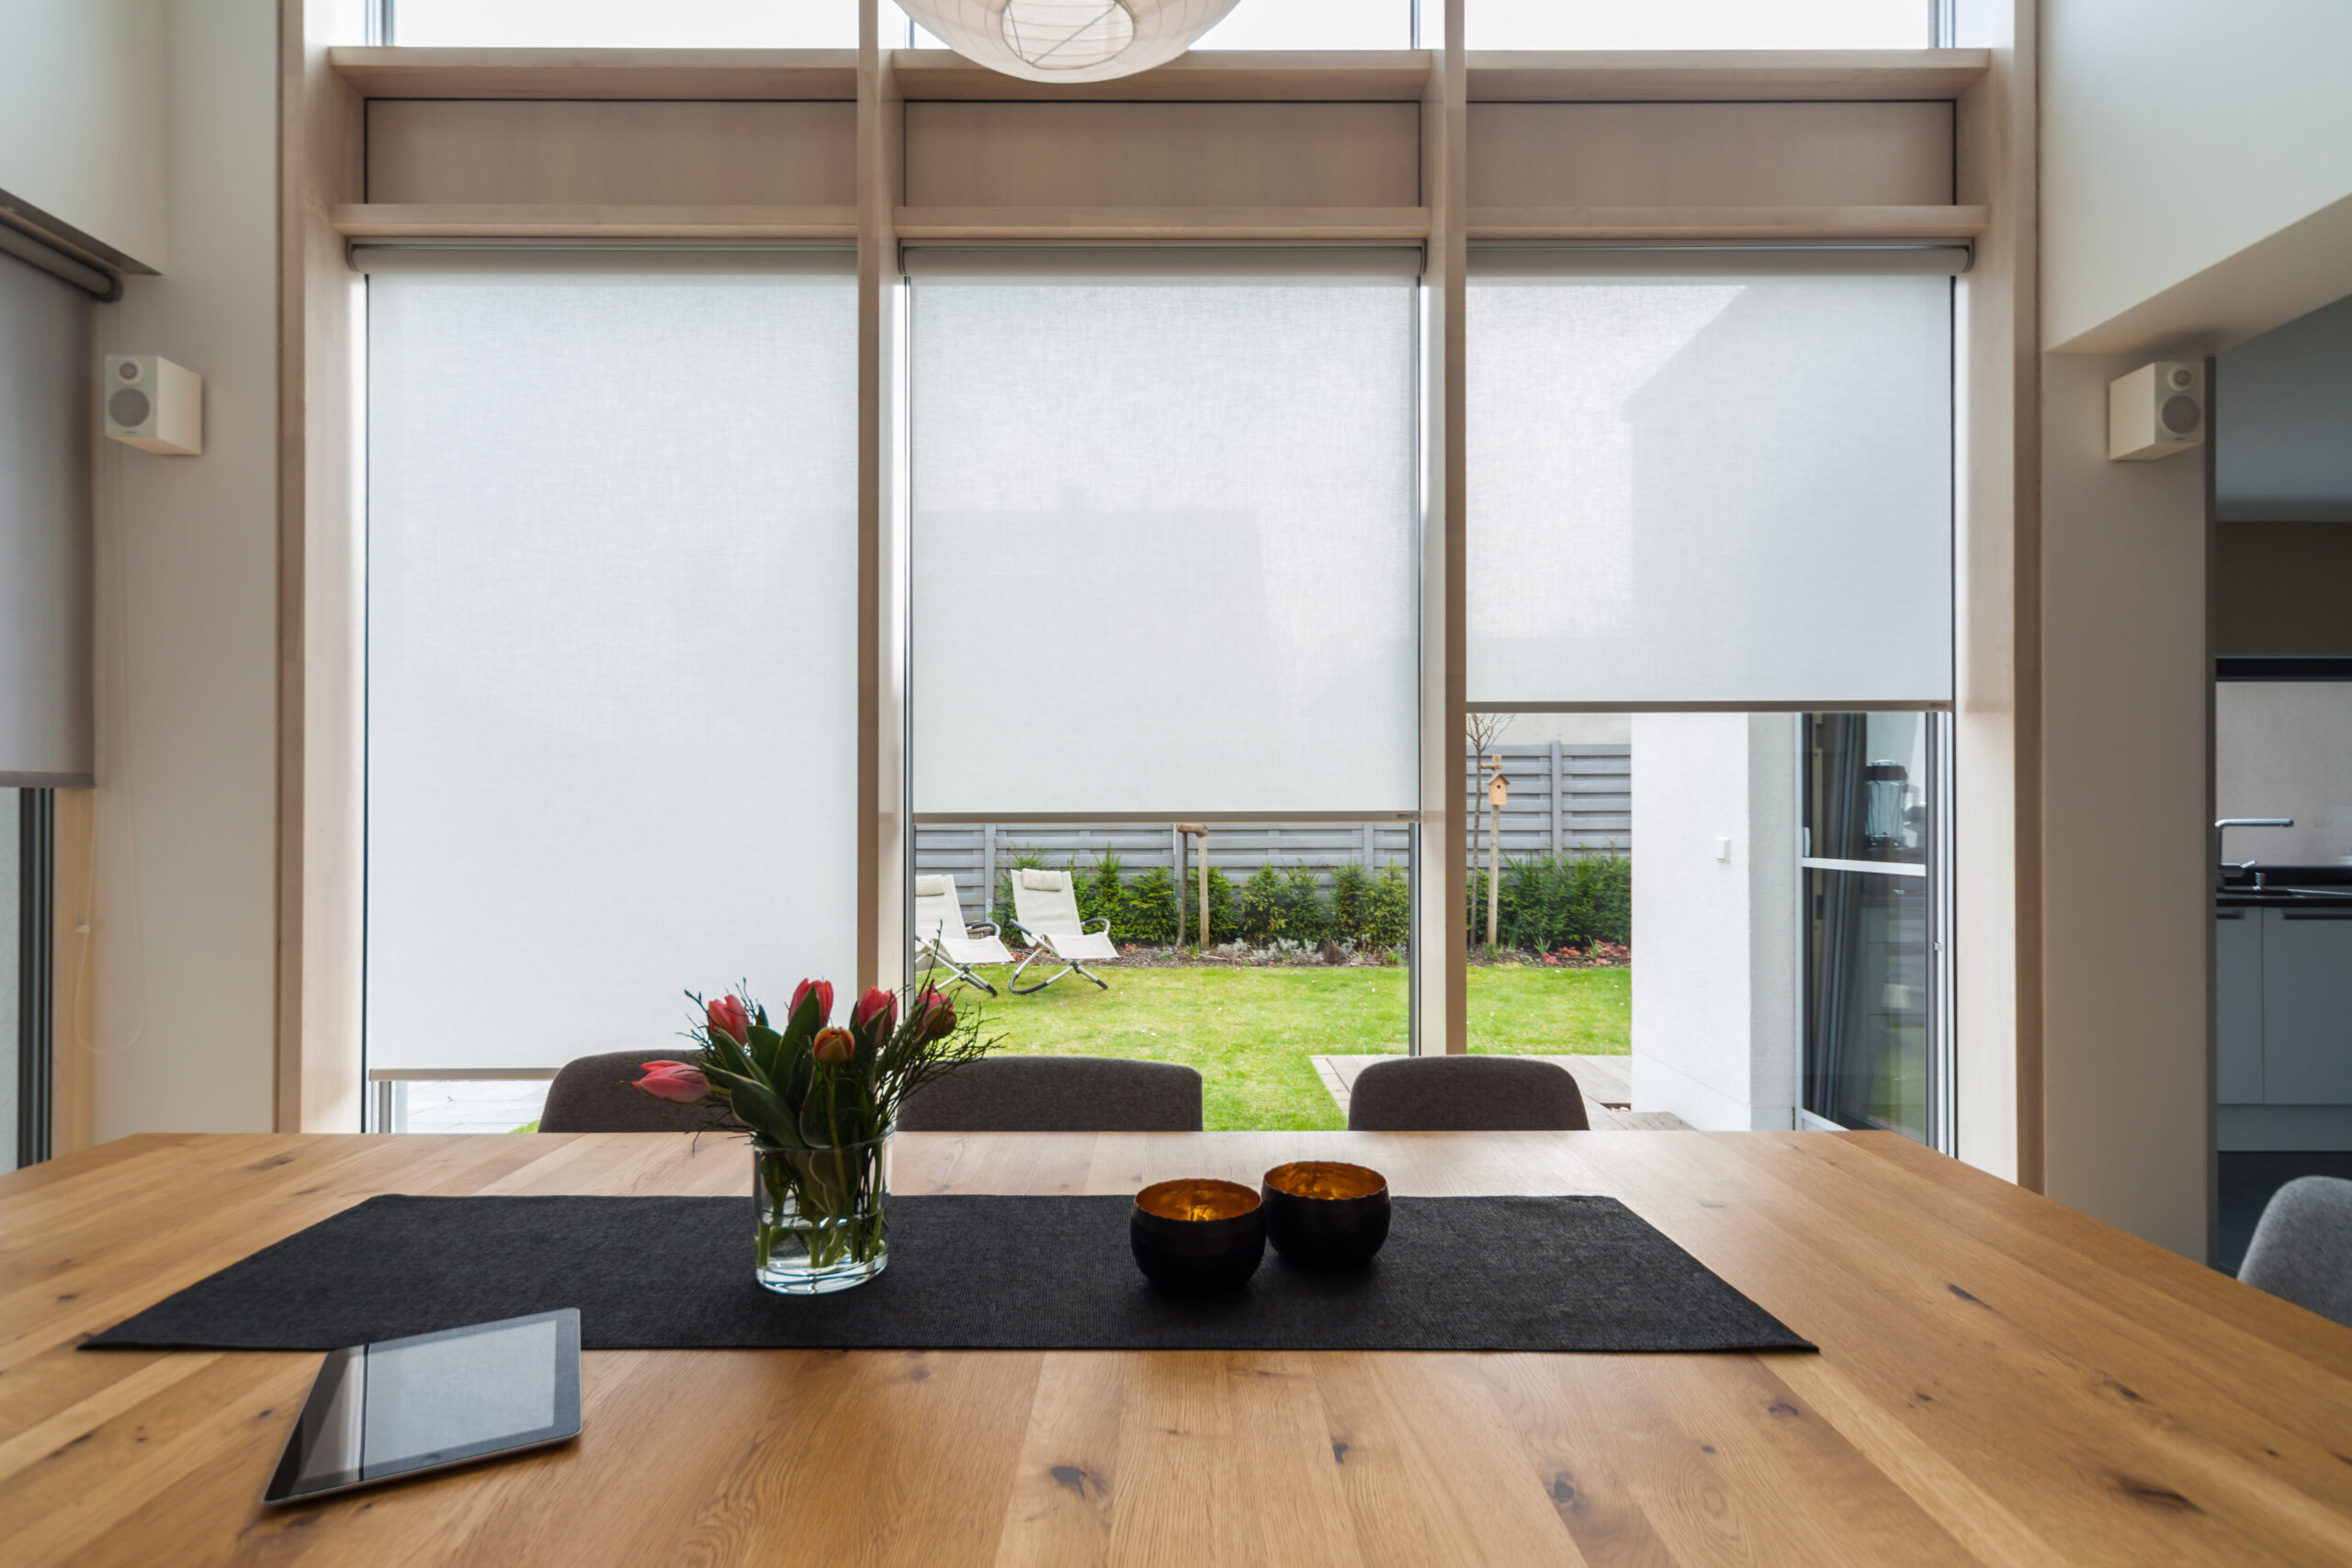 Modernes Esszimmer mit raumhohen Fenstern an denen Sonnenschutzrollos befestigt sind.